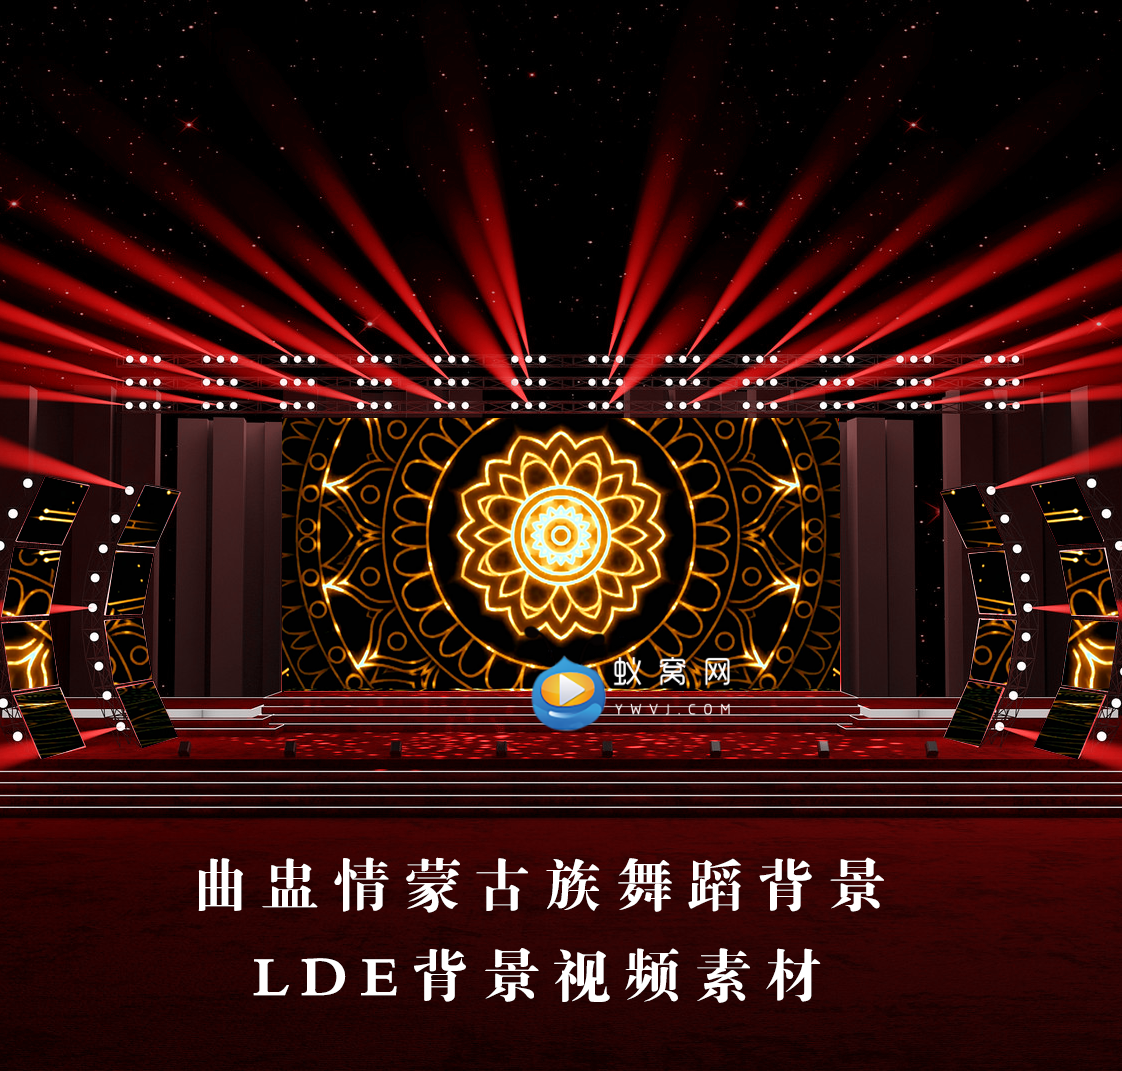 S3394 曲盅情蒙古族舞蹈 晚会演出LED节目大屏舞美背景视频素材